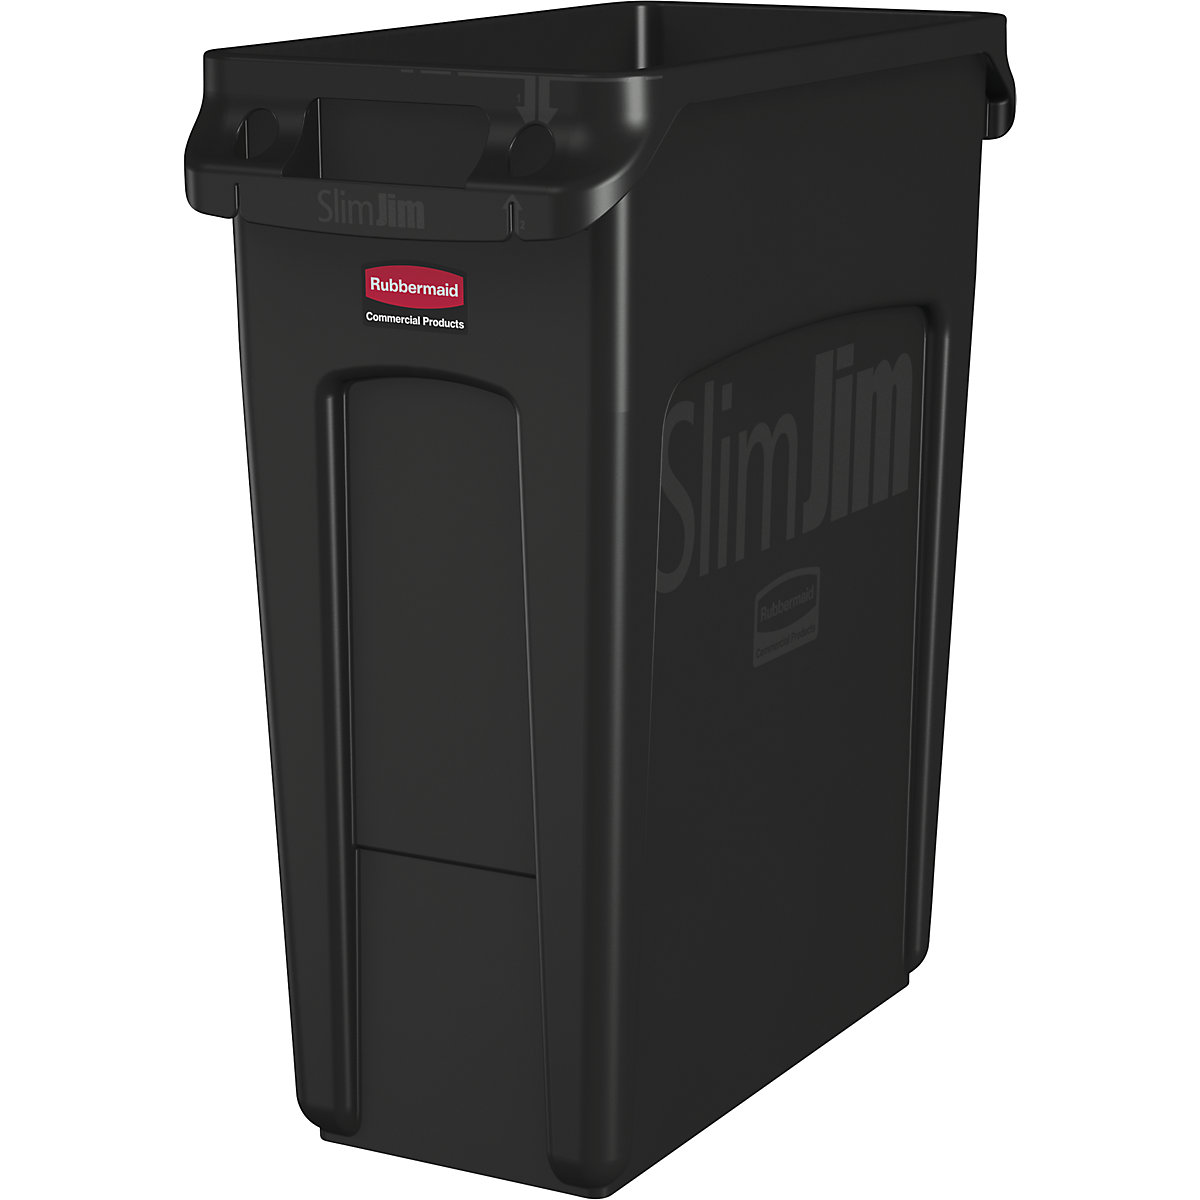 Contenitore per la raccolta differenziata/cestino per rifiuti SLIM JIM® – Rubbermaid, capacità 87 l, con canali di aerazione, nero-9